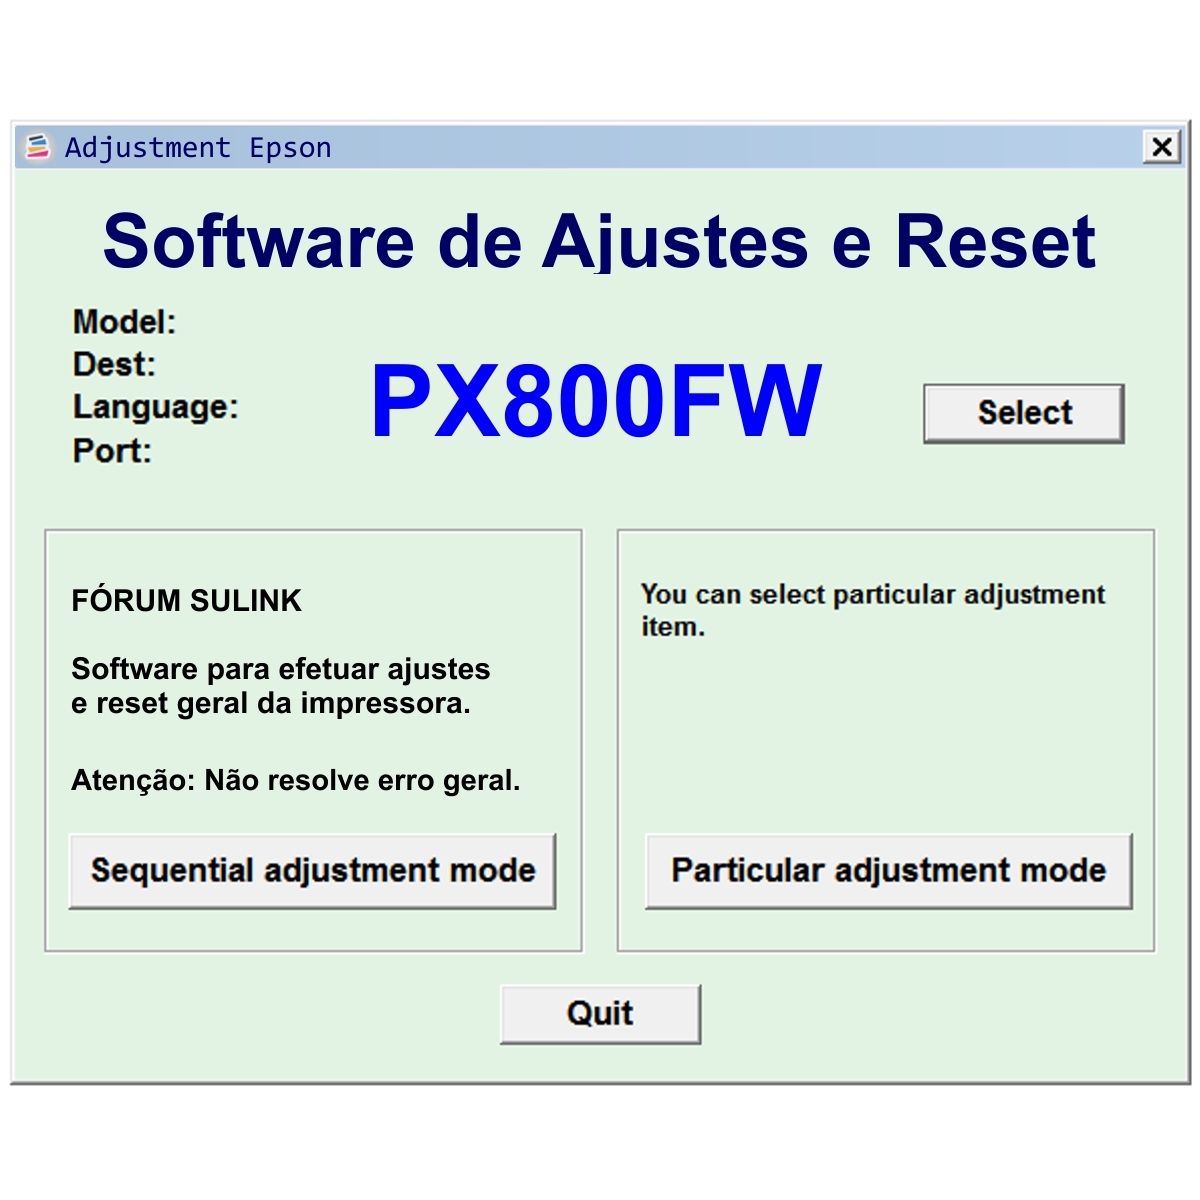 Epson PX800FW - Software de Ajuste e Reset Epson / Printer Adjustment Software and Reset Software